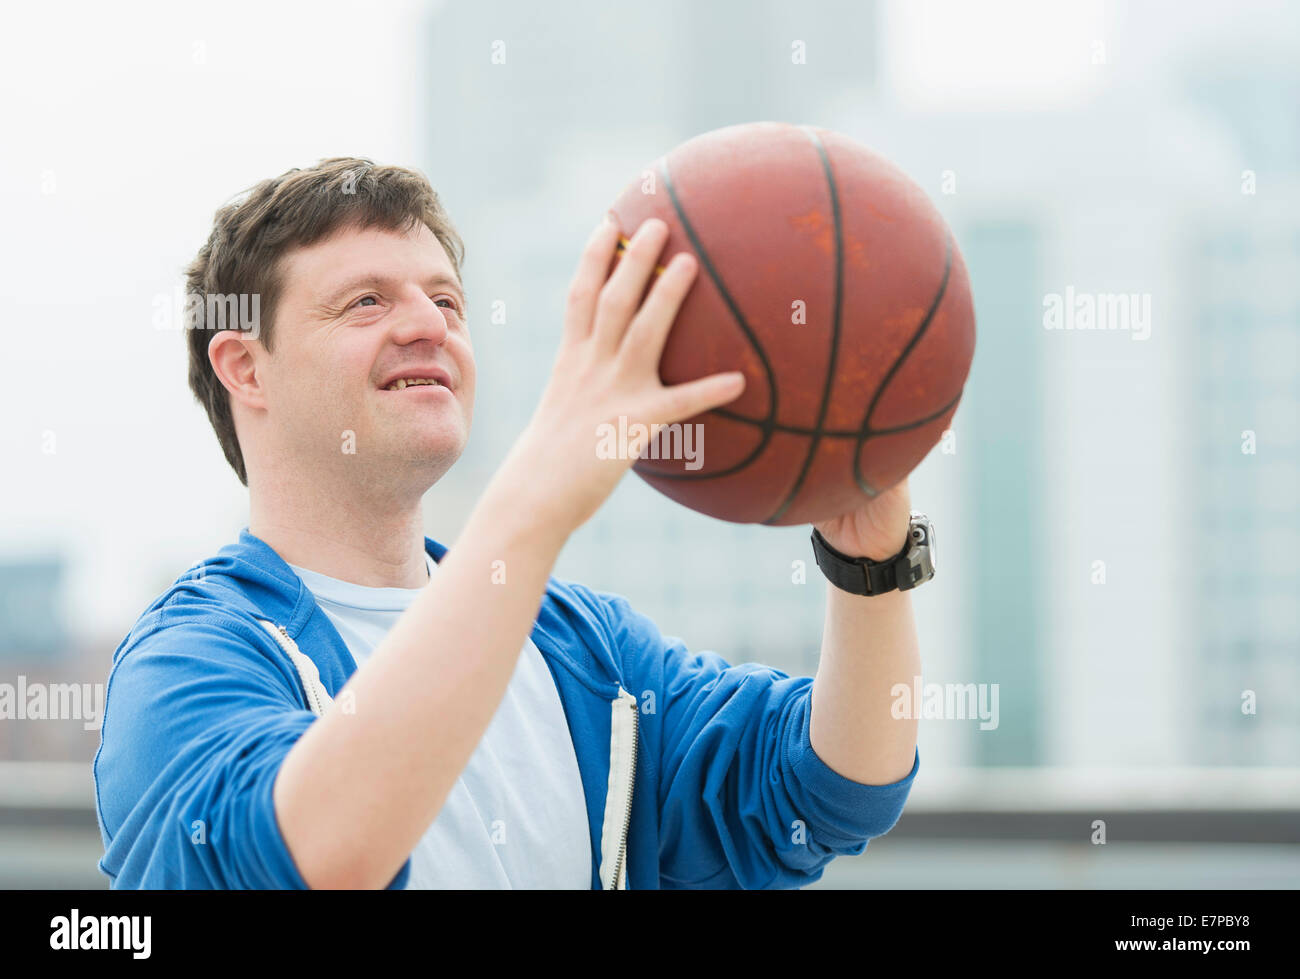 Uomo con la sindrome di down giocare a basket Foto Stock